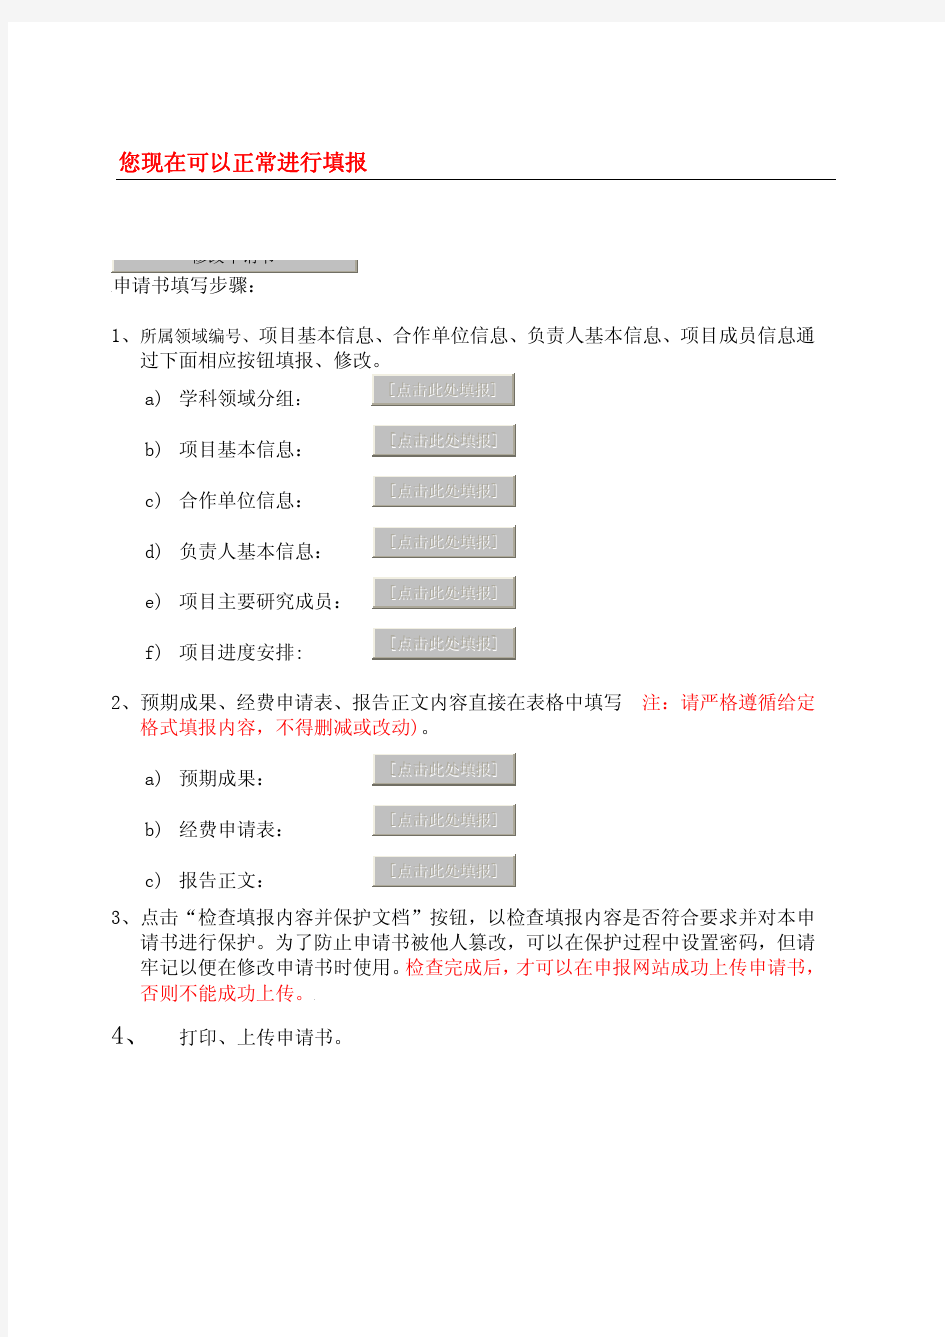 广东高校优秀青年创新人才培养计划项目申请书(自然科学)